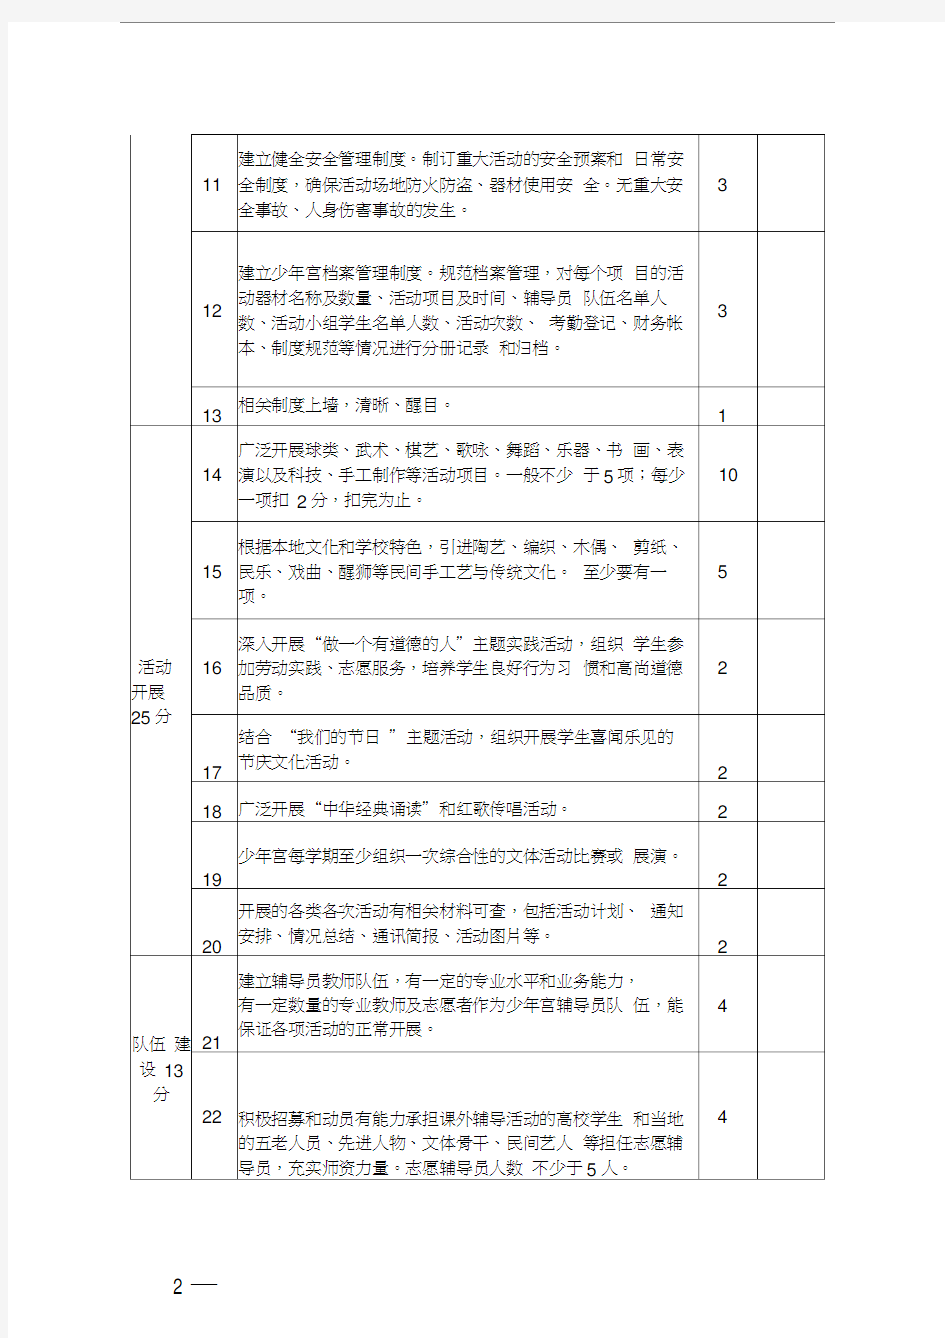 广东省乡村学校少年宫考核评估标准